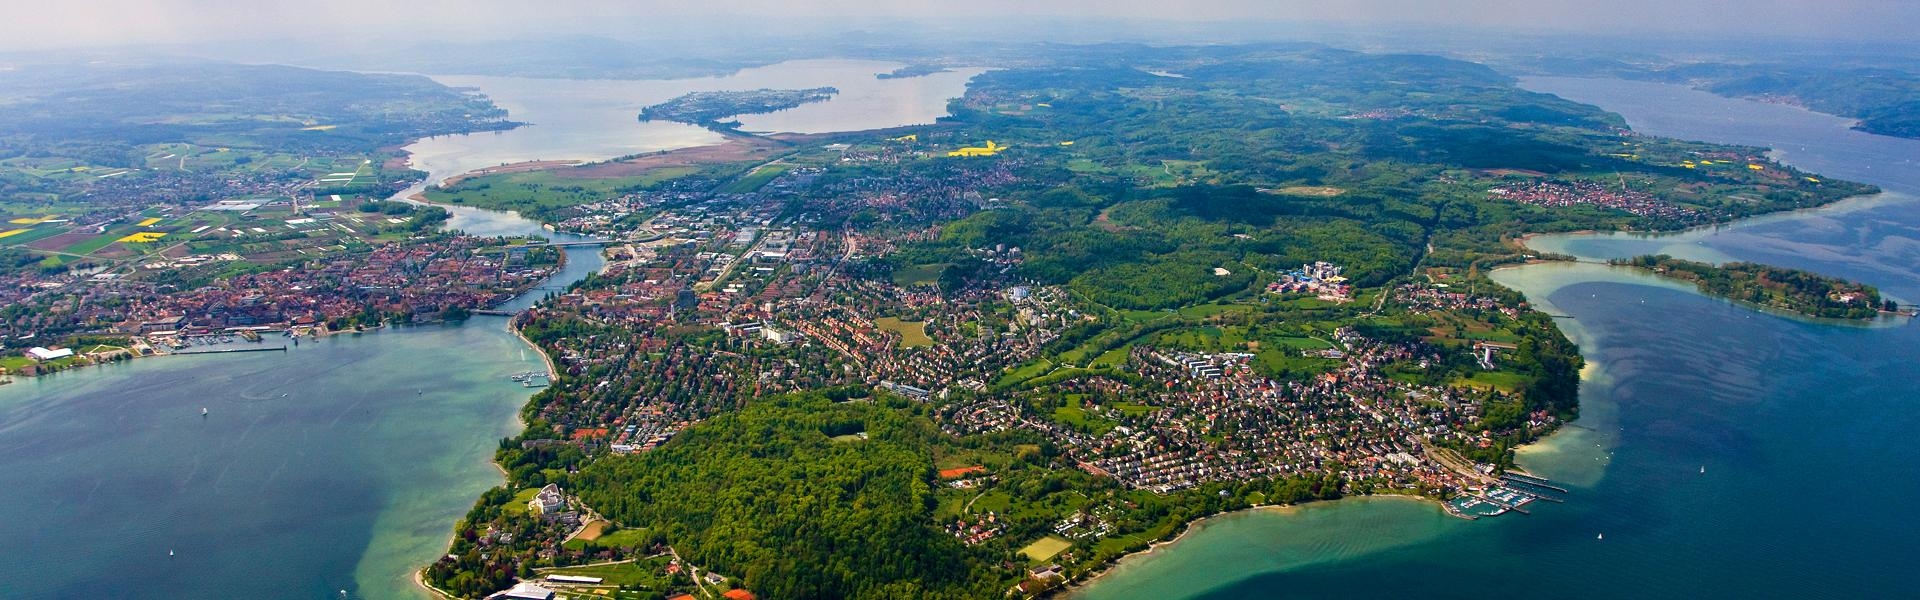 Luftaufnahme von Konstanz mit Hrnle, Lorettowald und Mainau